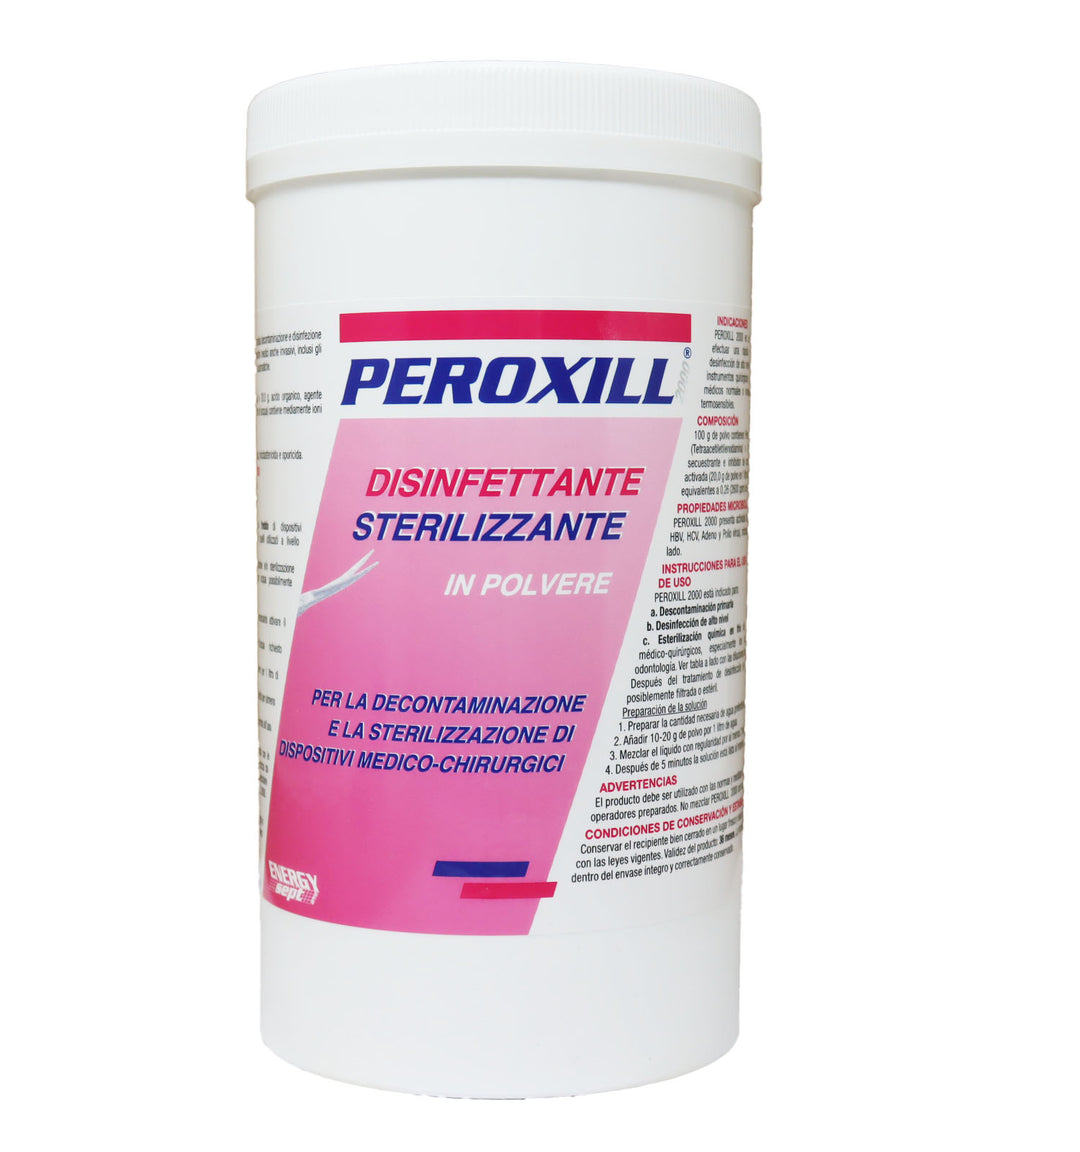 Peroxill 2000 Disinfettante Sterilizzante In Polvere Per Dispositivi Medico Chirurgici 1000 gr